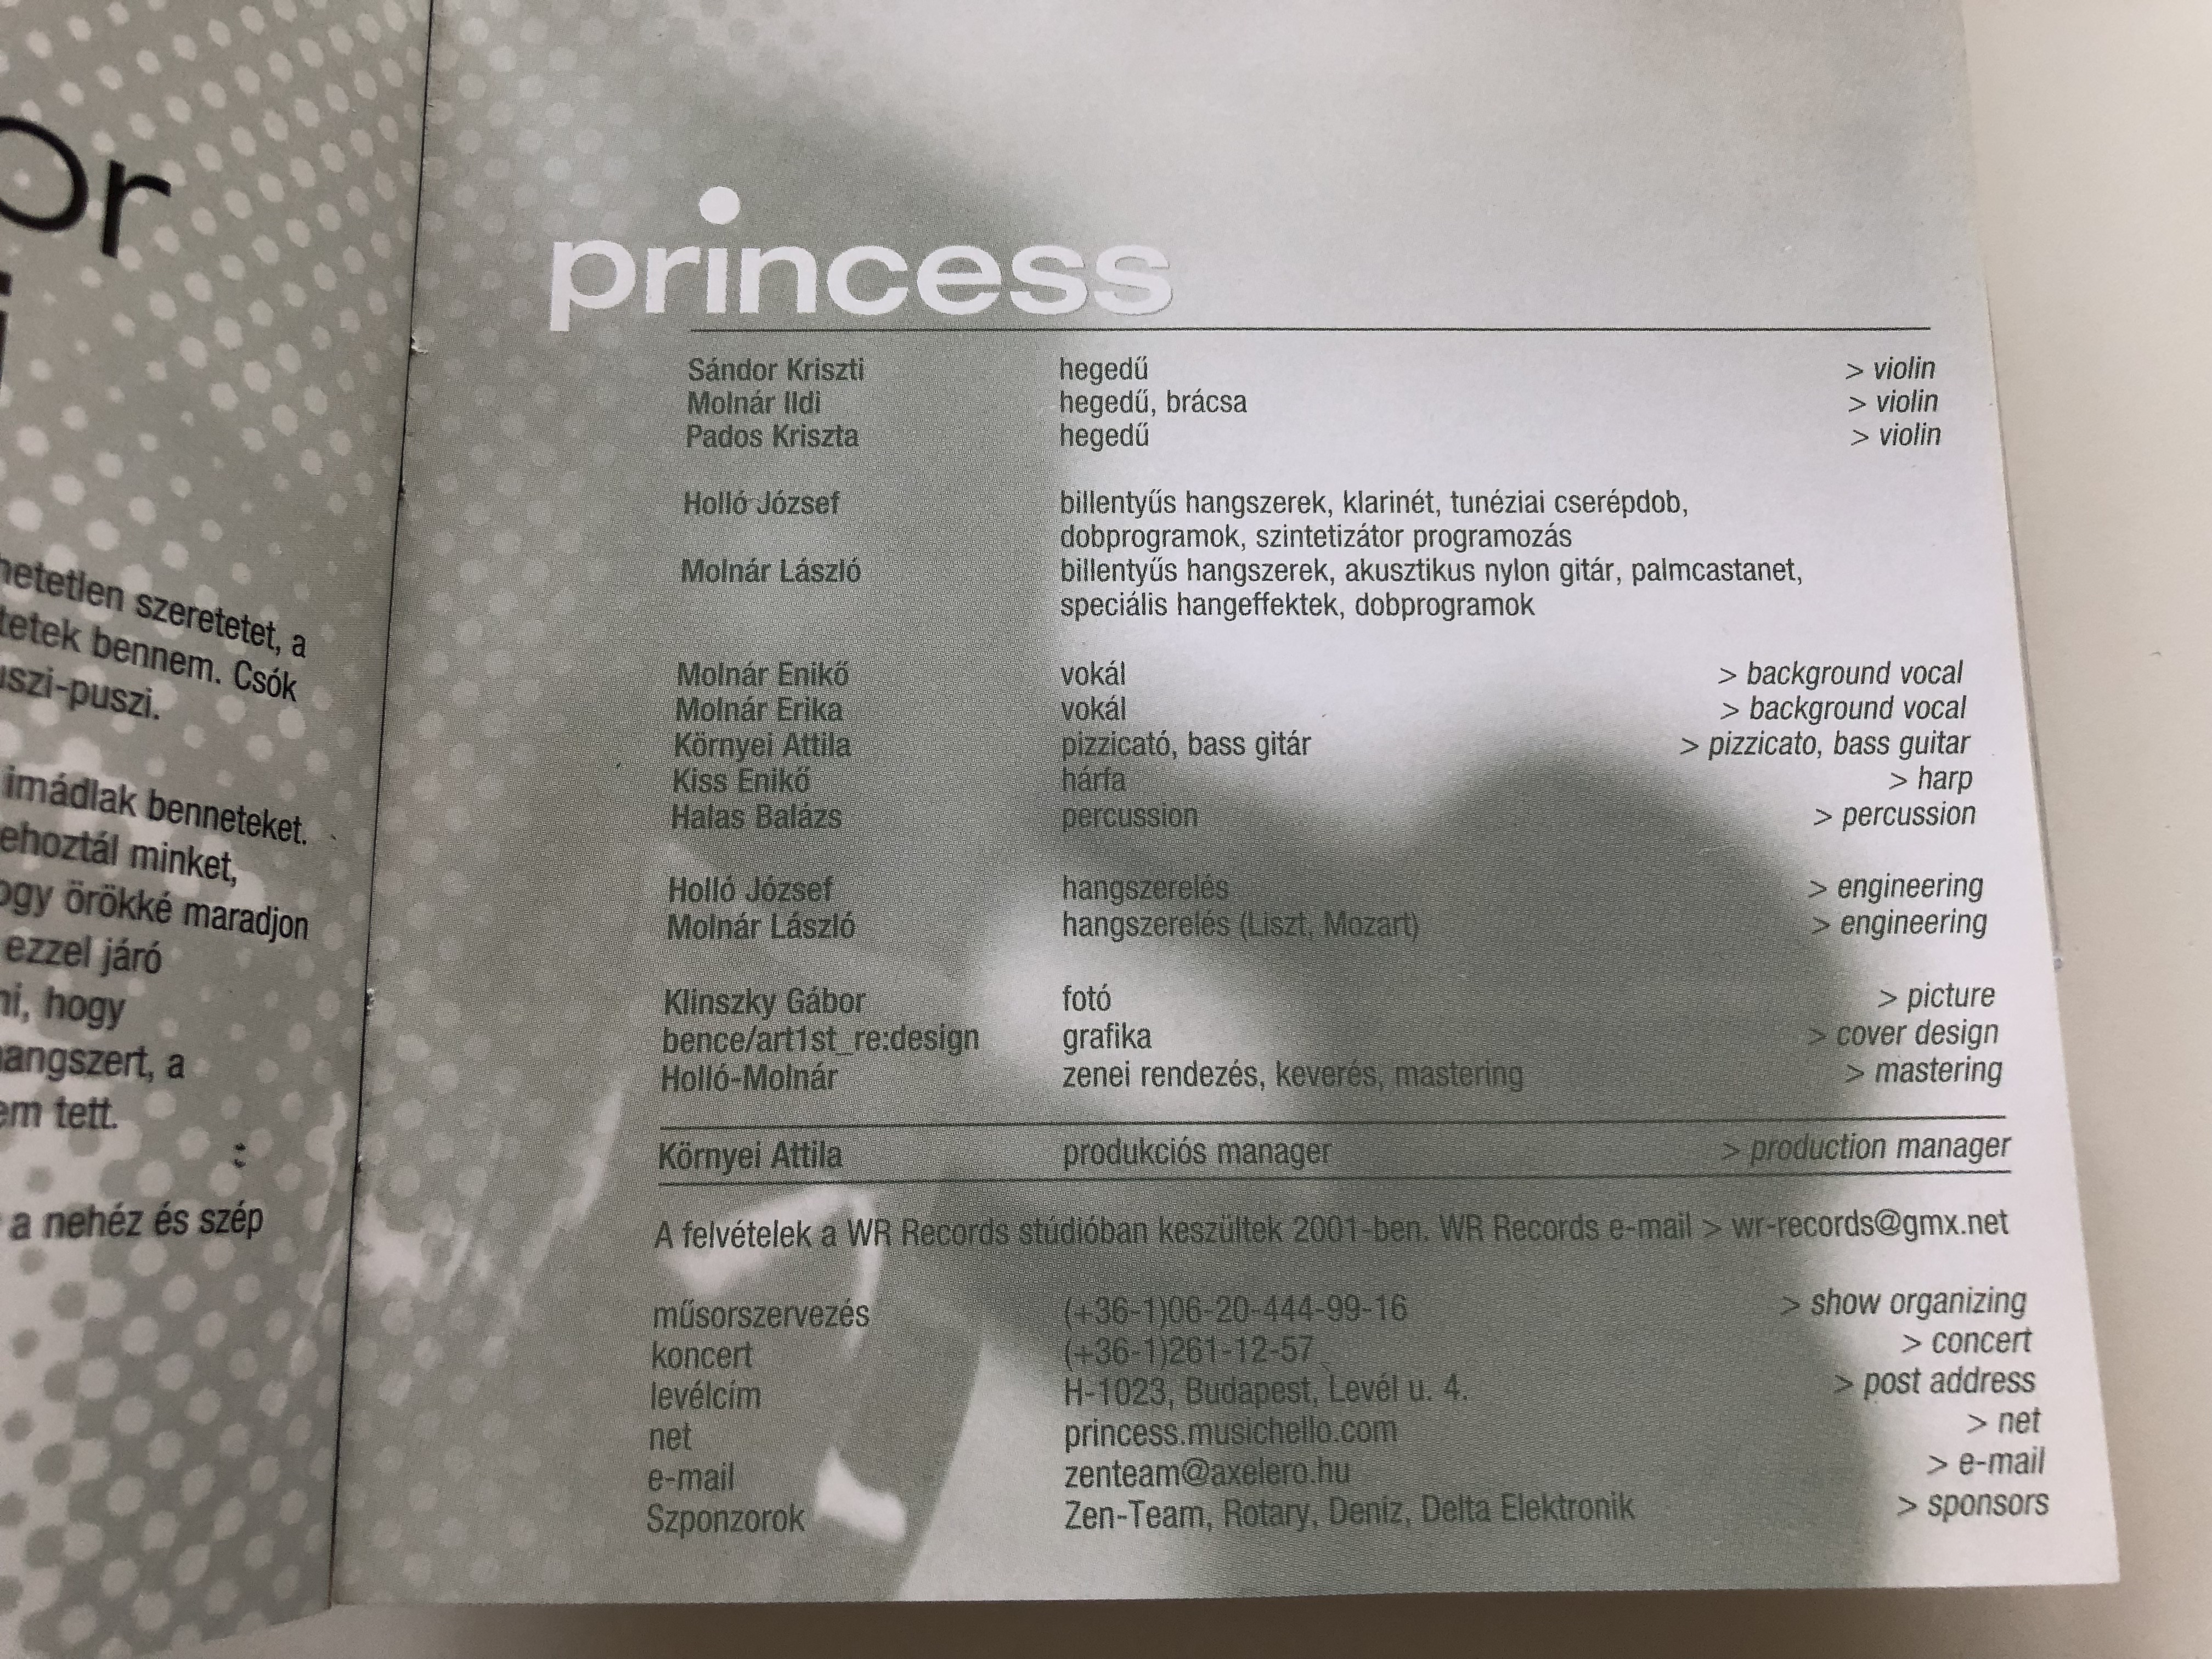 princess-a-hegedu-hercegno-img-2502.jpg